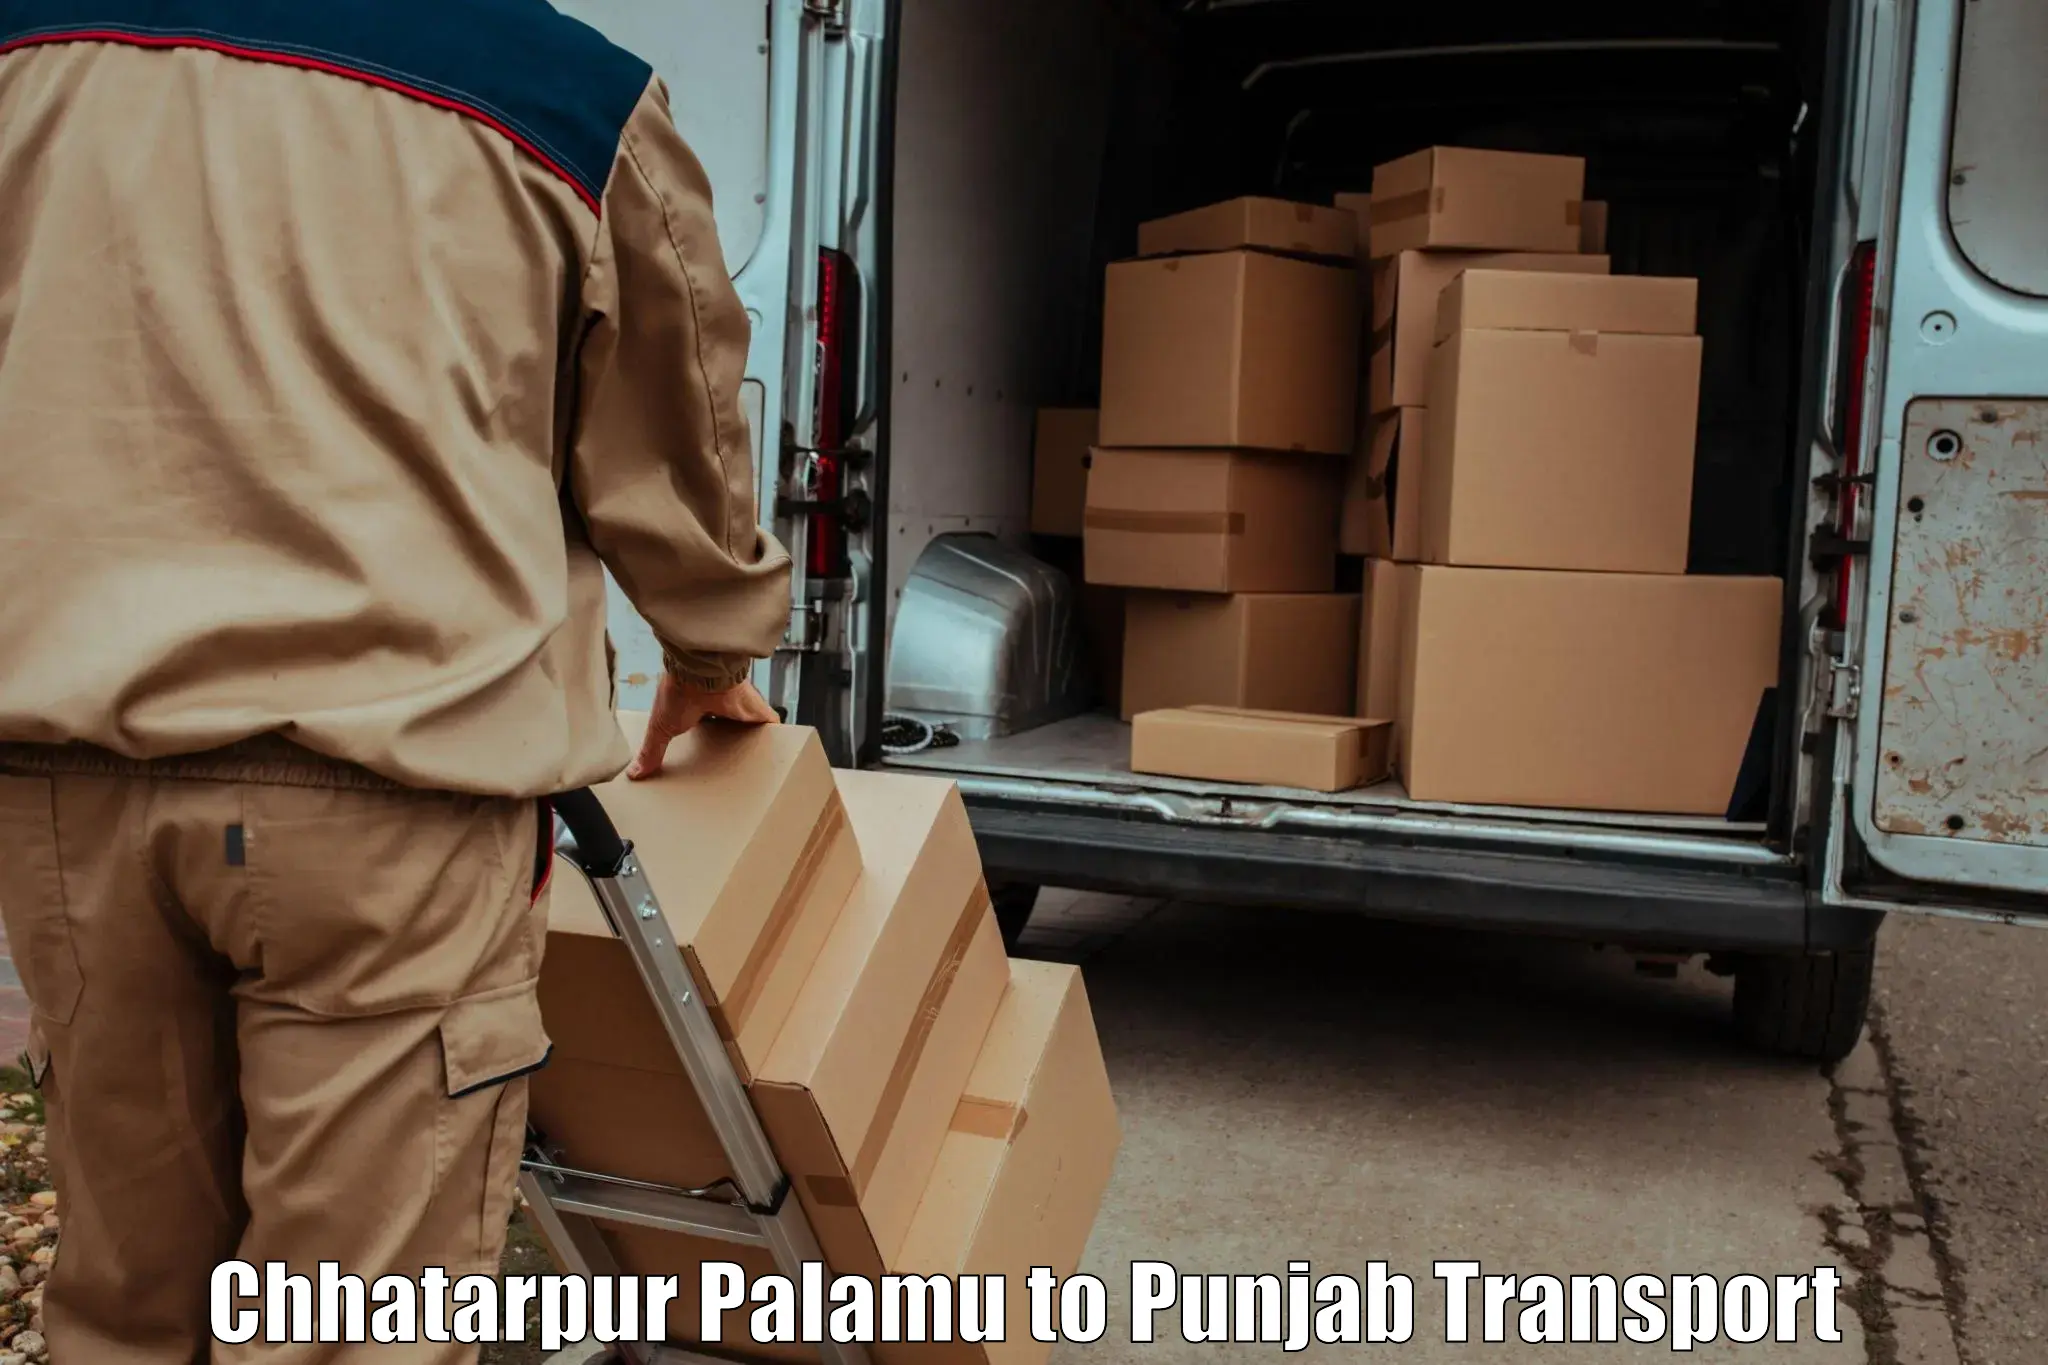 Logistics transportation services Chhatarpur Palamu to Muktsar